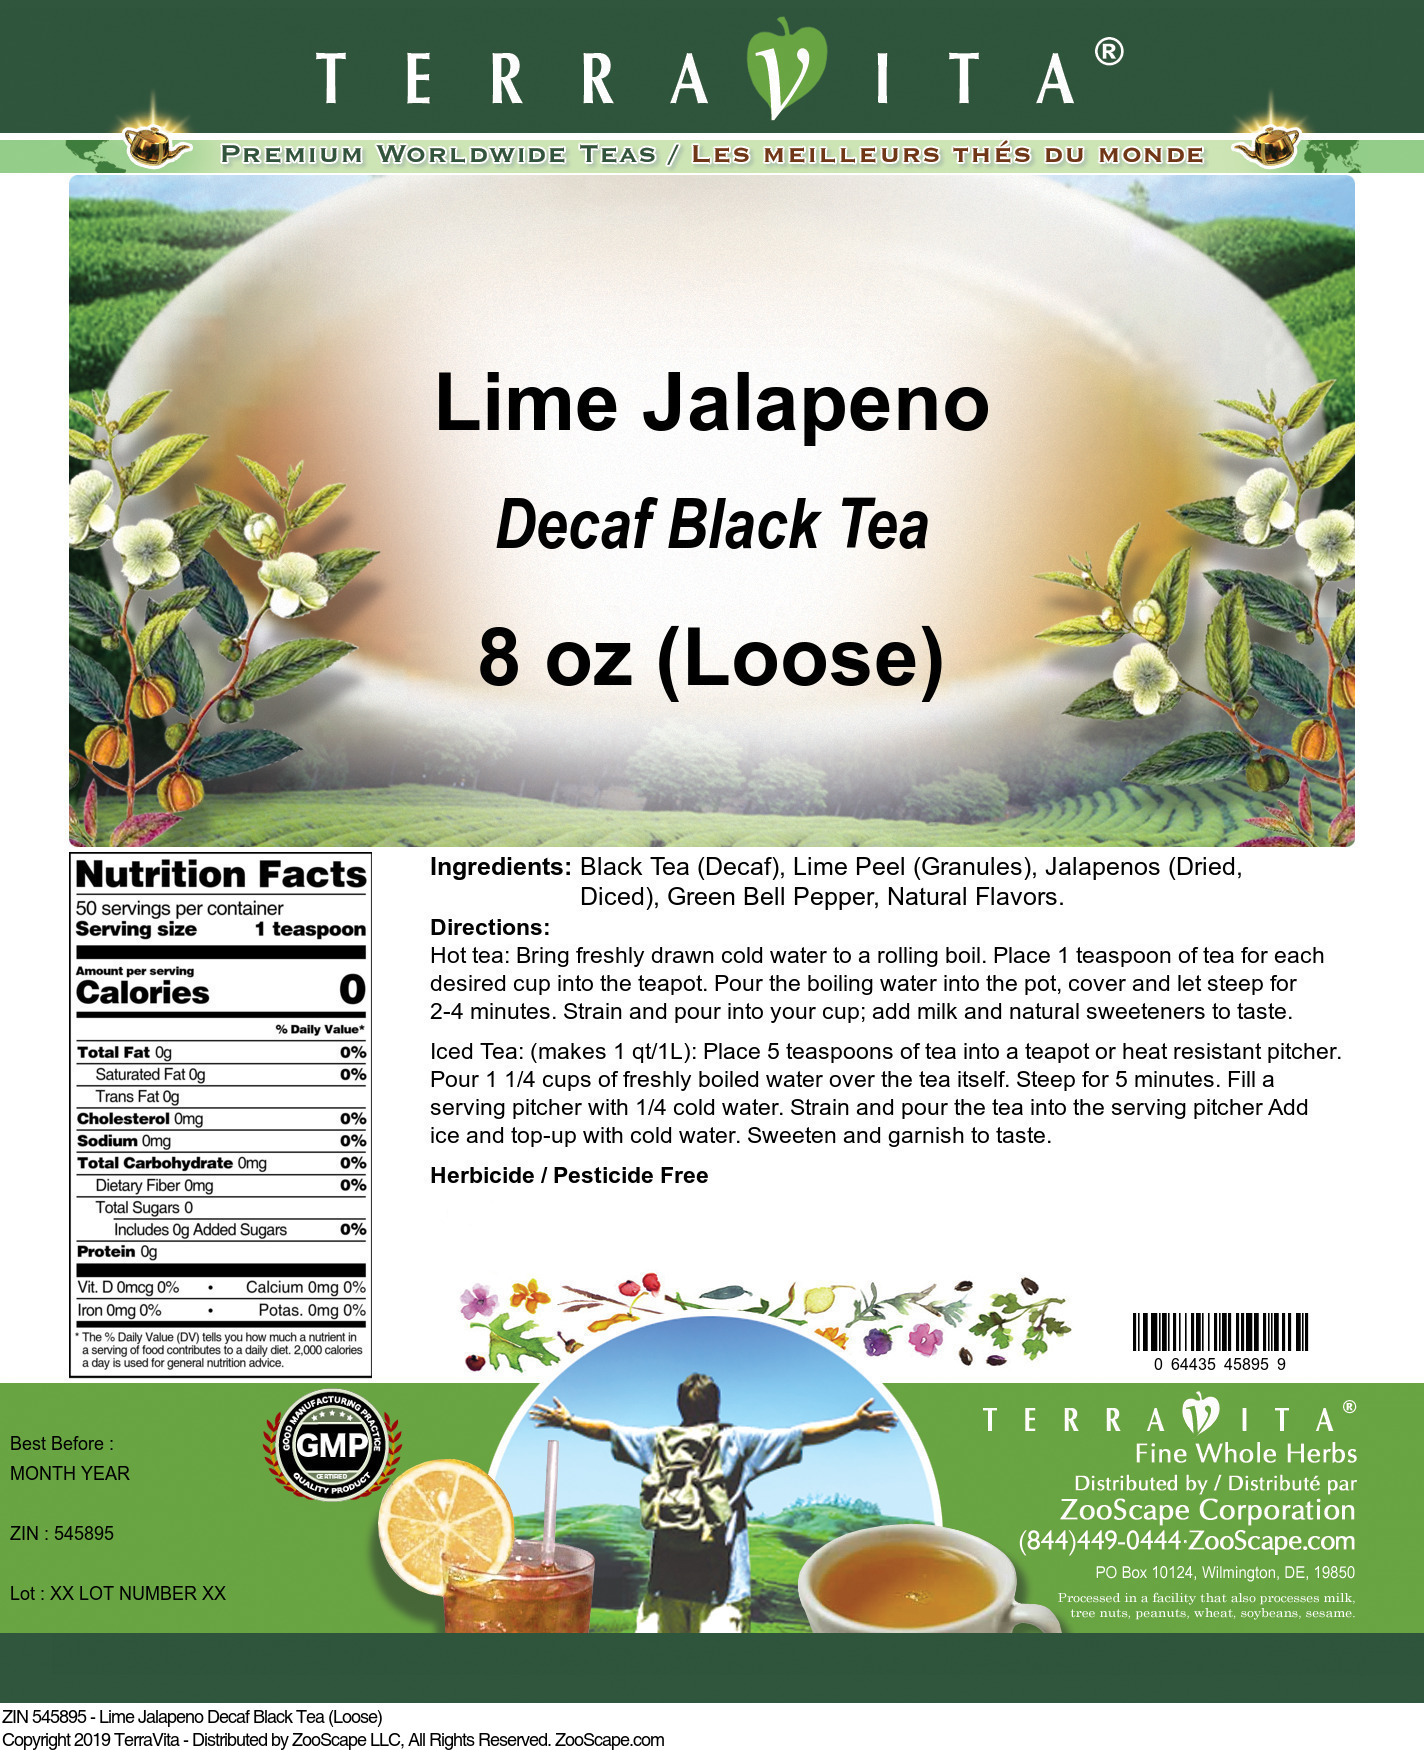 Lime Jalapeno Decaf Black Tea (Loose) - Label